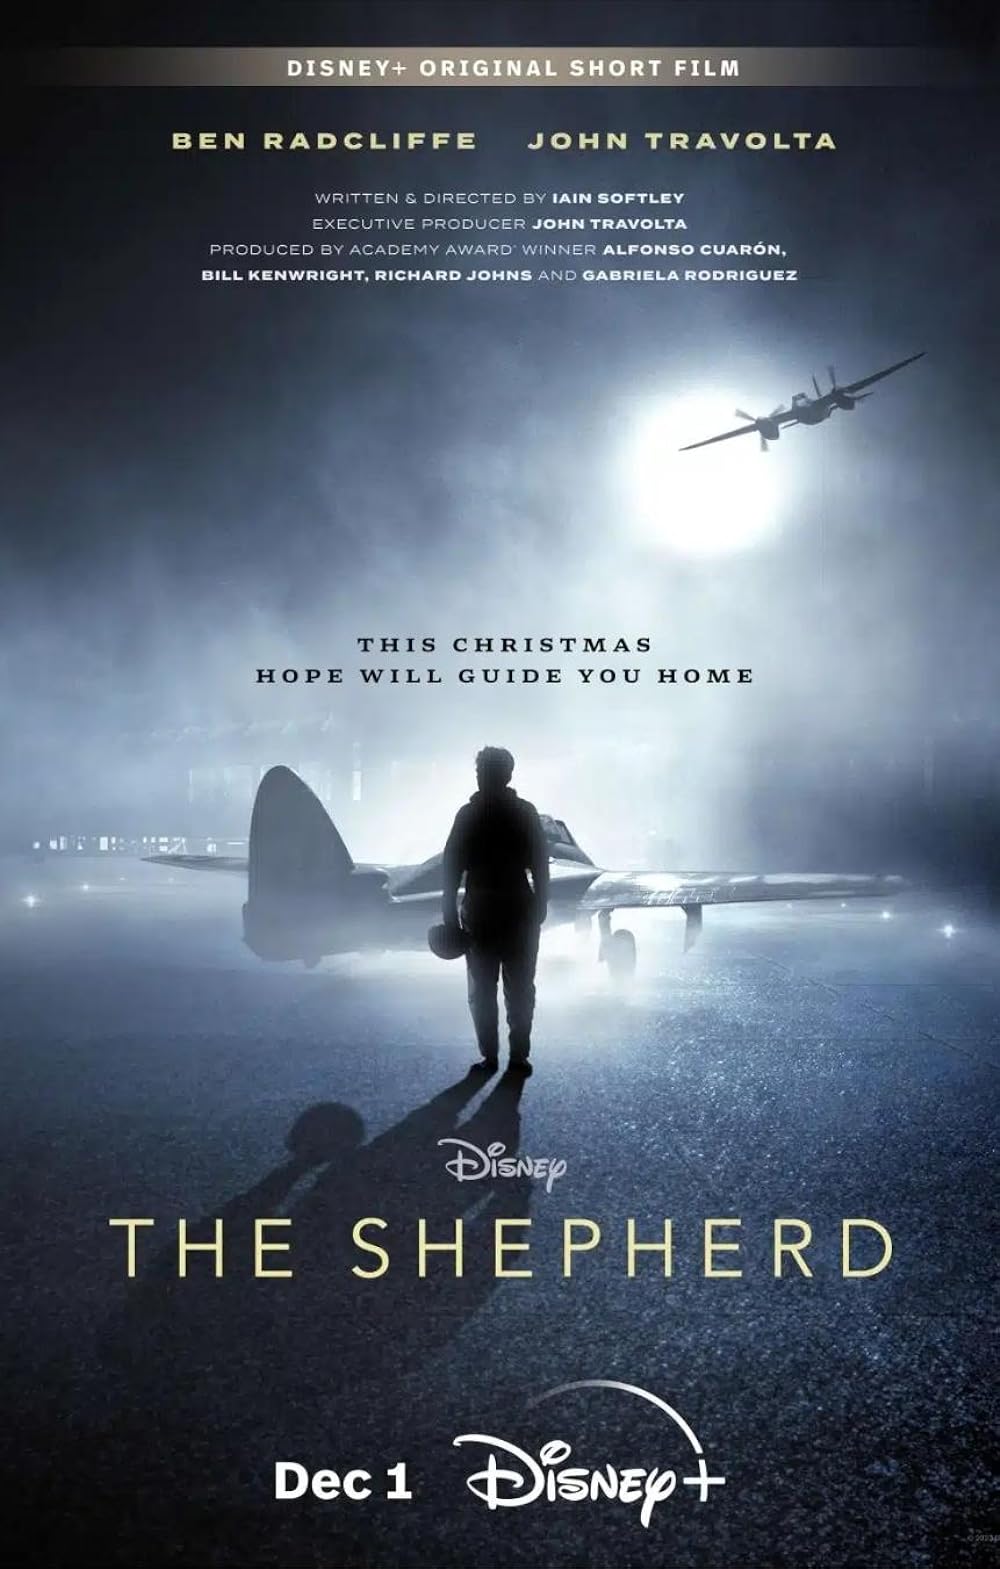 The Shepherd (December 1) -  Disney+ HotstarEmbark on an adrenaline-fueled adventure with 